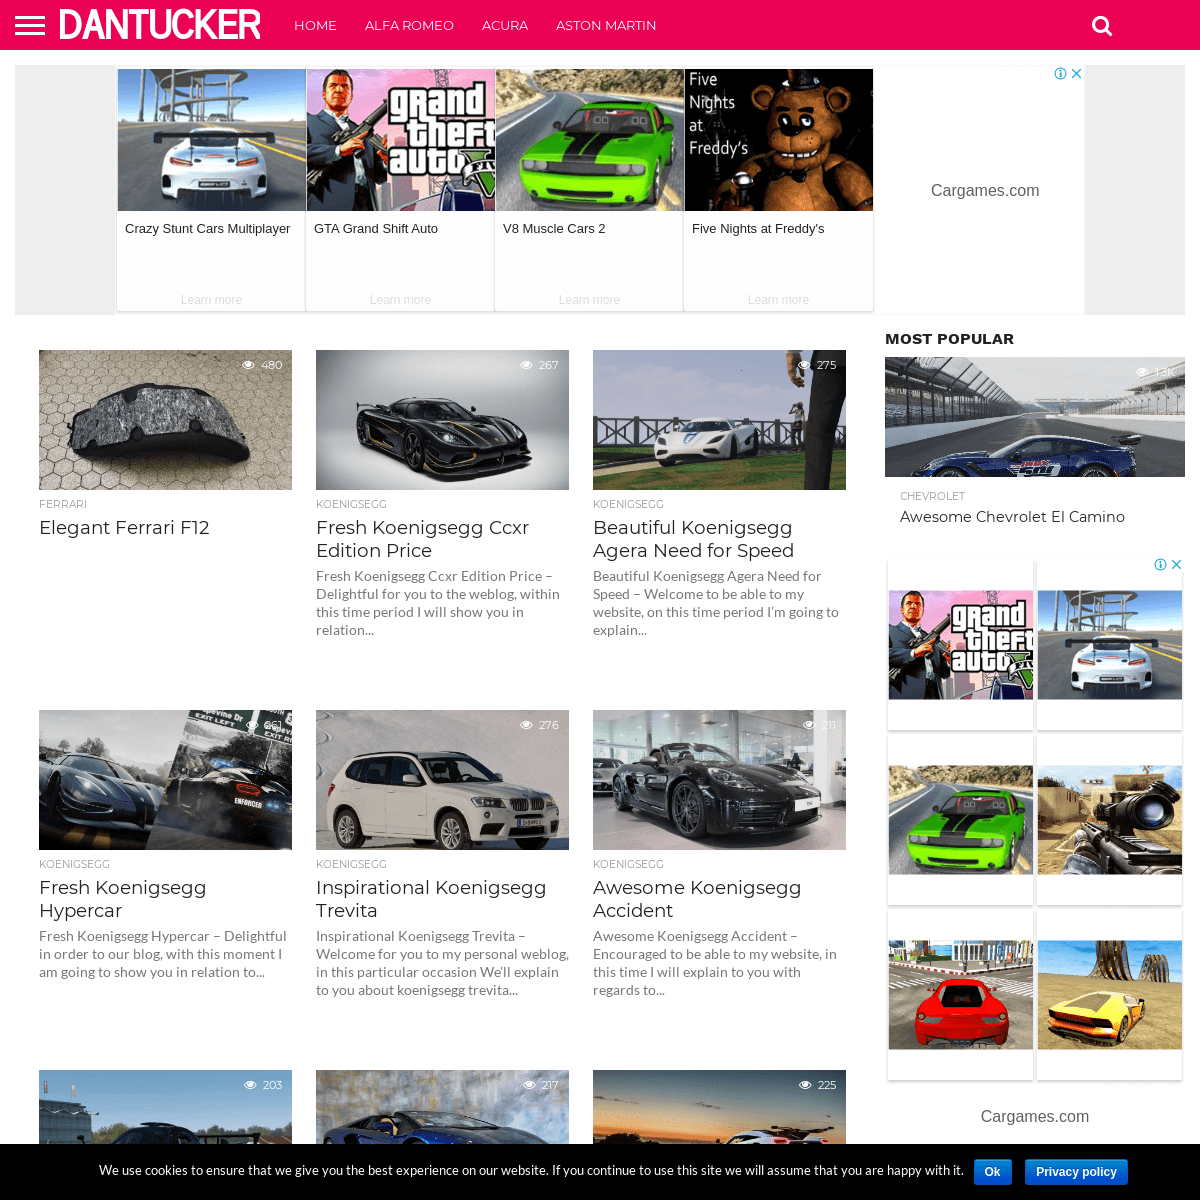 A complete backup of dantuckerautos.com